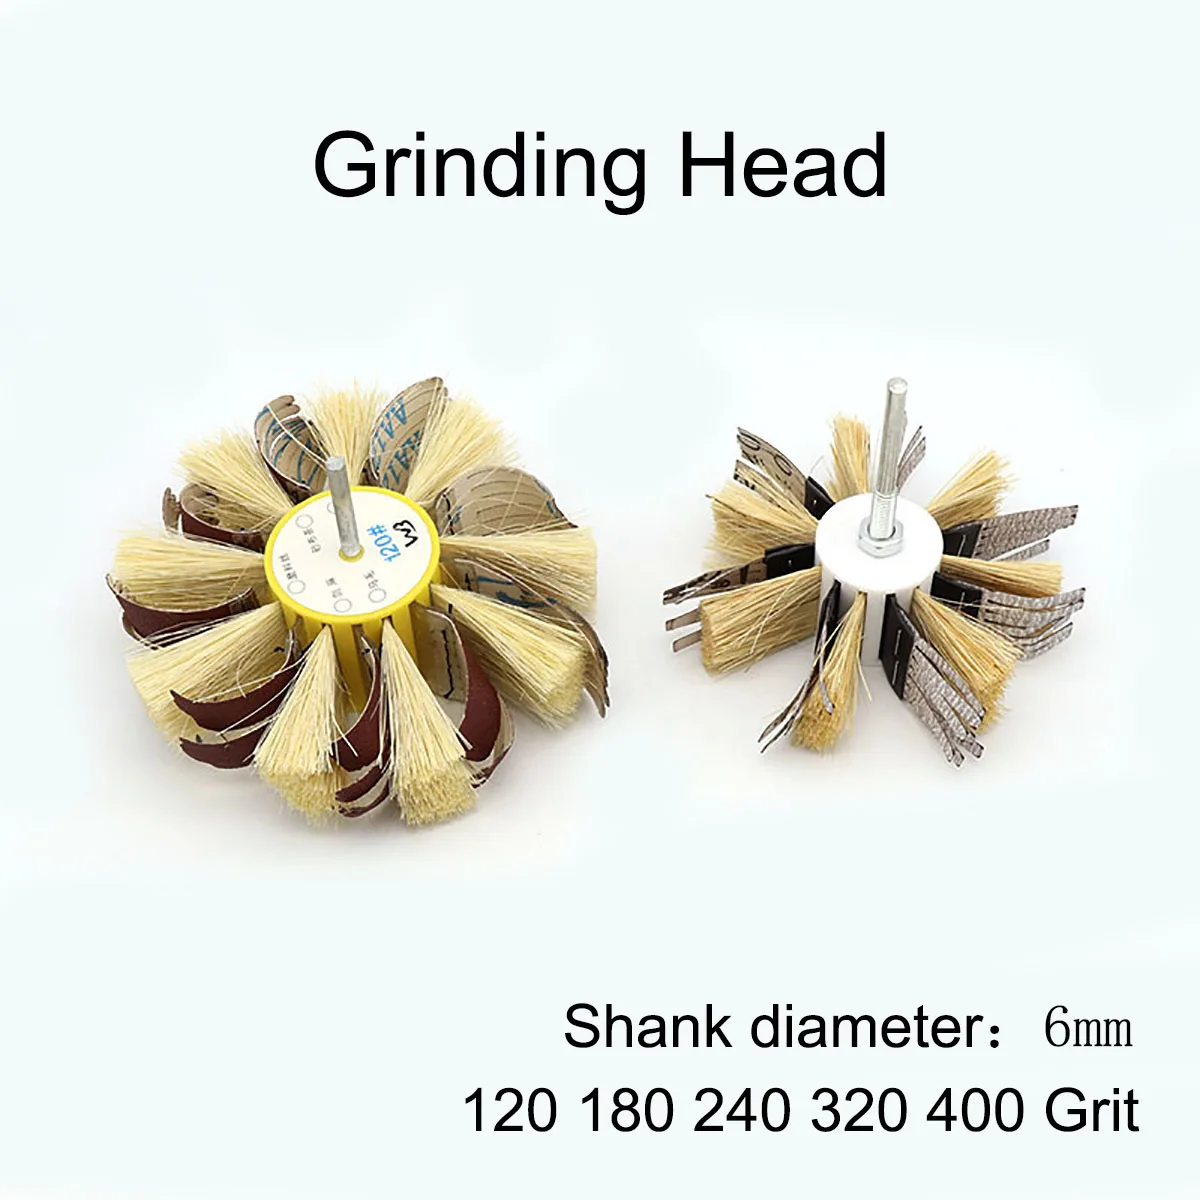 5Pcs Shank Diameter 6mm Grinding Head Granularity 120 180 240 320 400 Grit For Sanding and Polishing